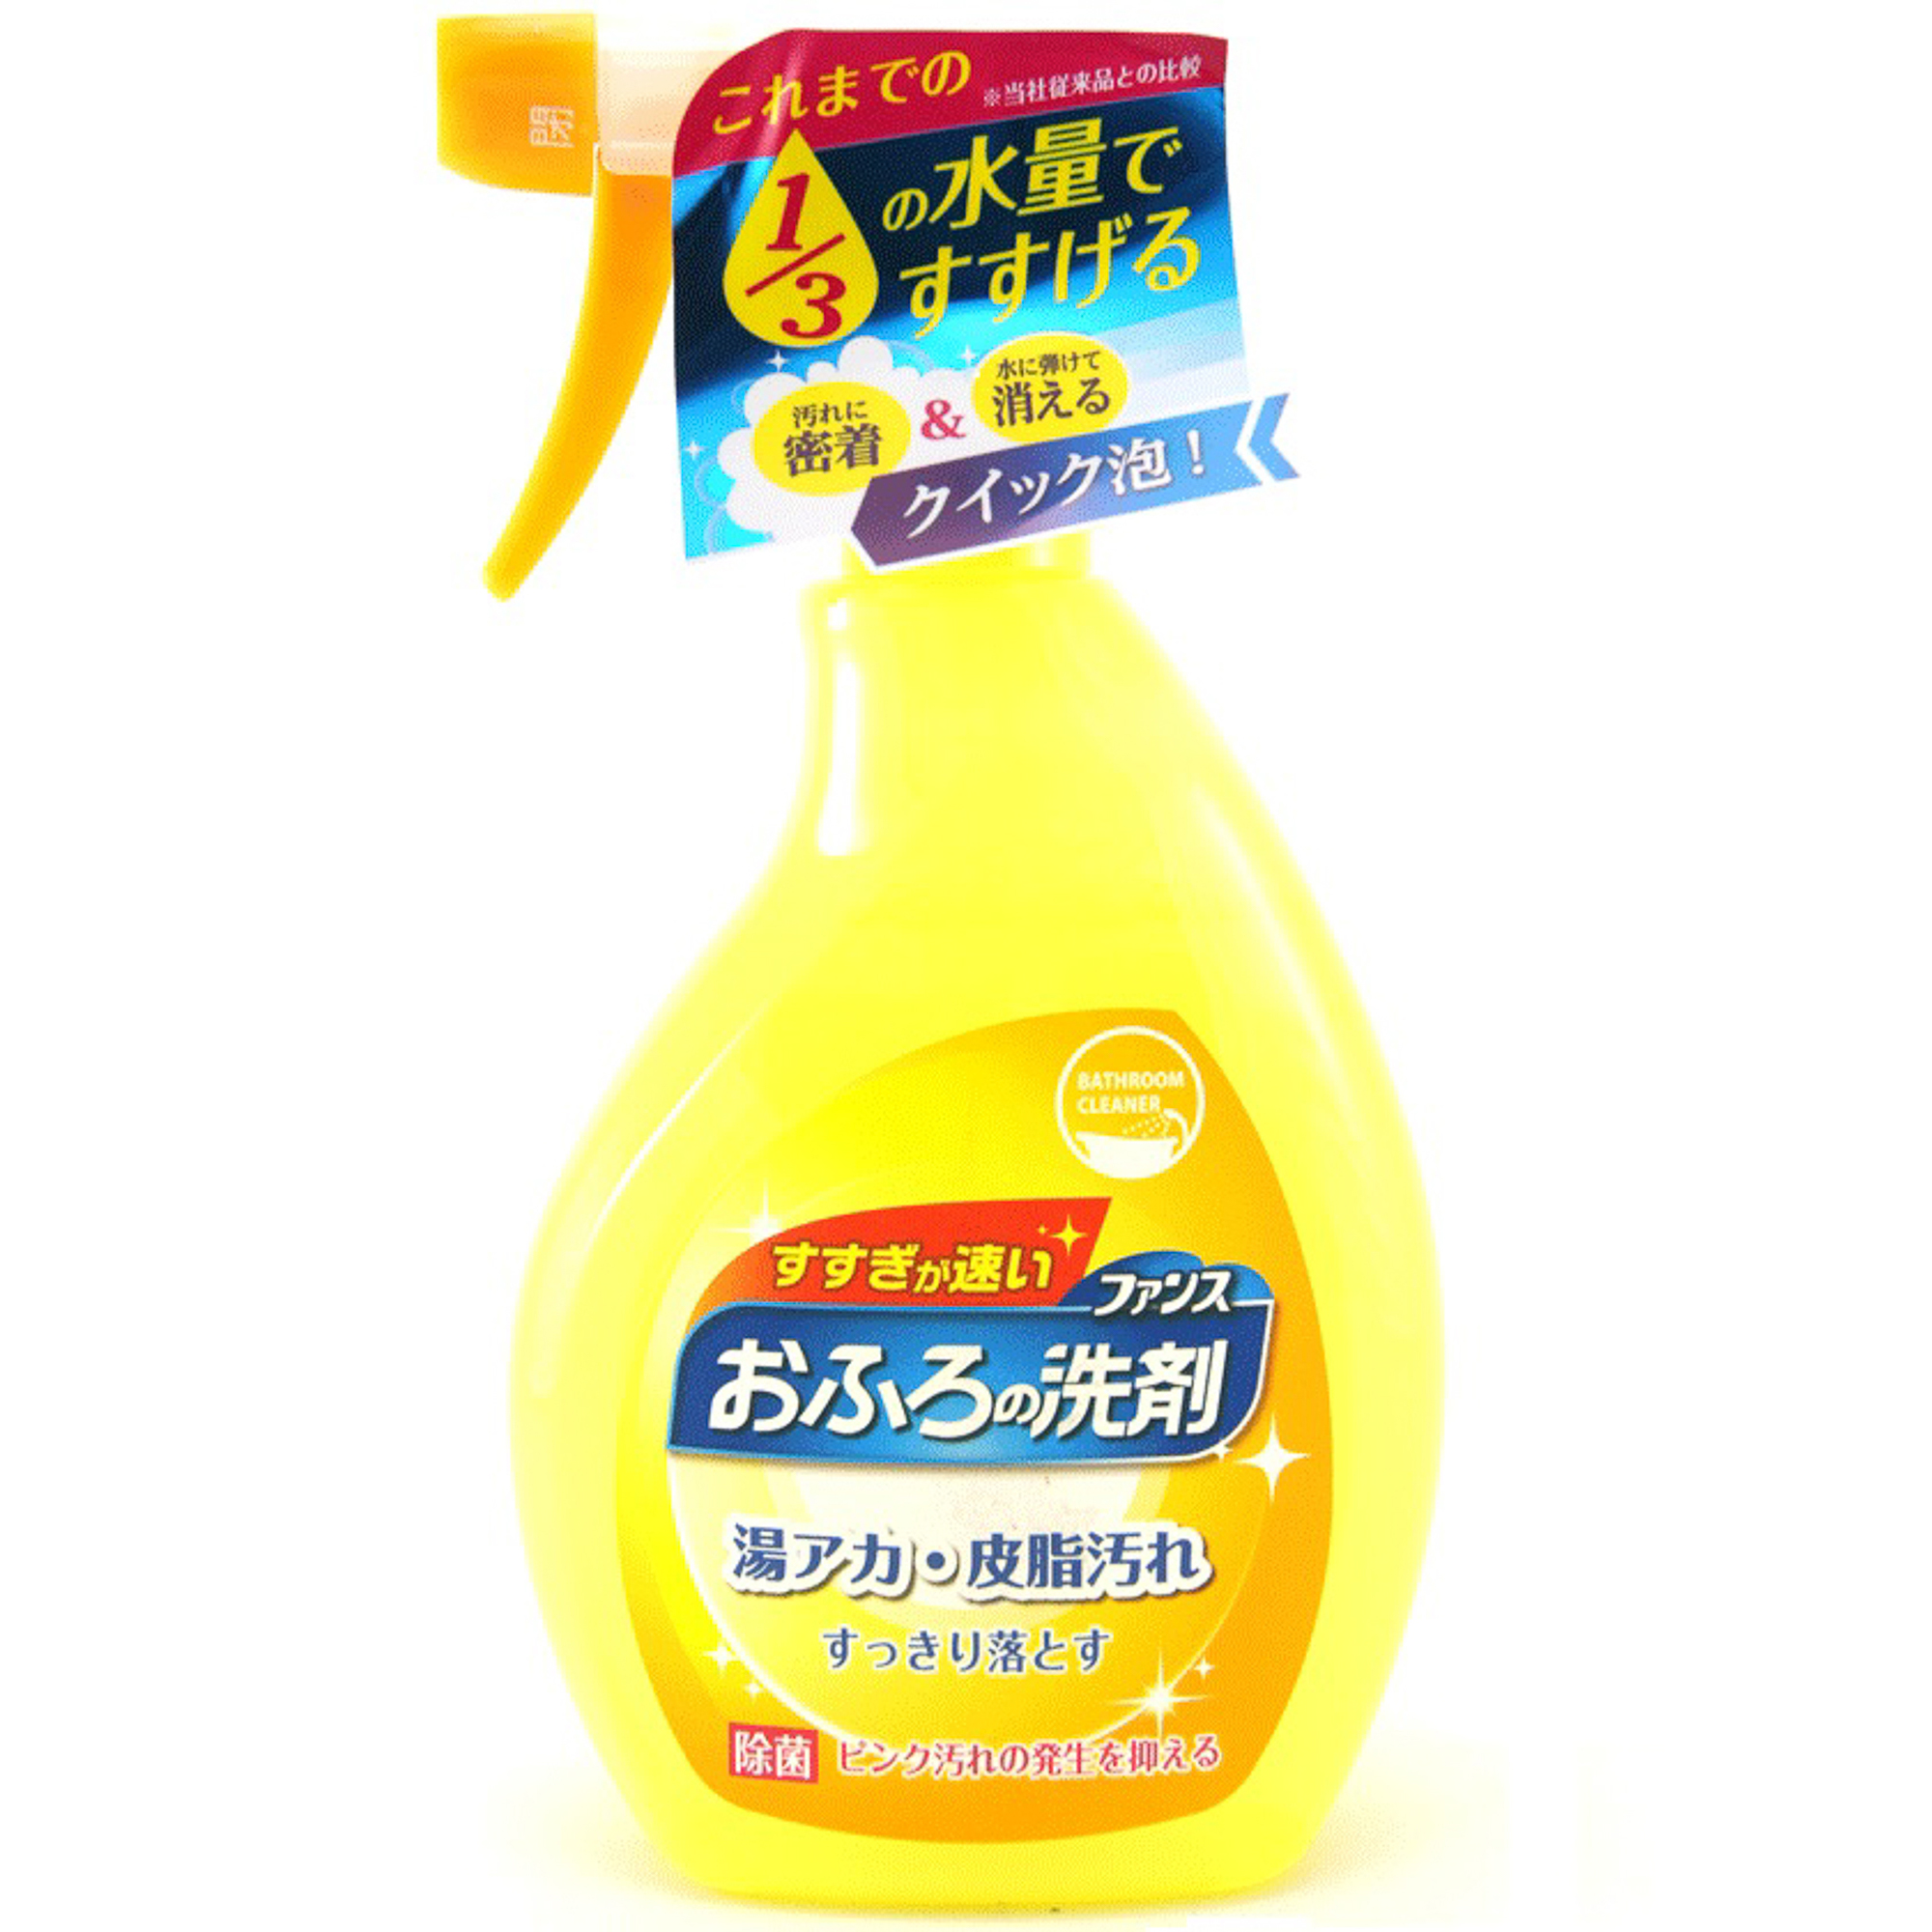 Спрей пенный Daiichi Ofuro для чистки в ванной комнате 380 мл спрей toua для чистки инструментов gng 520 мл